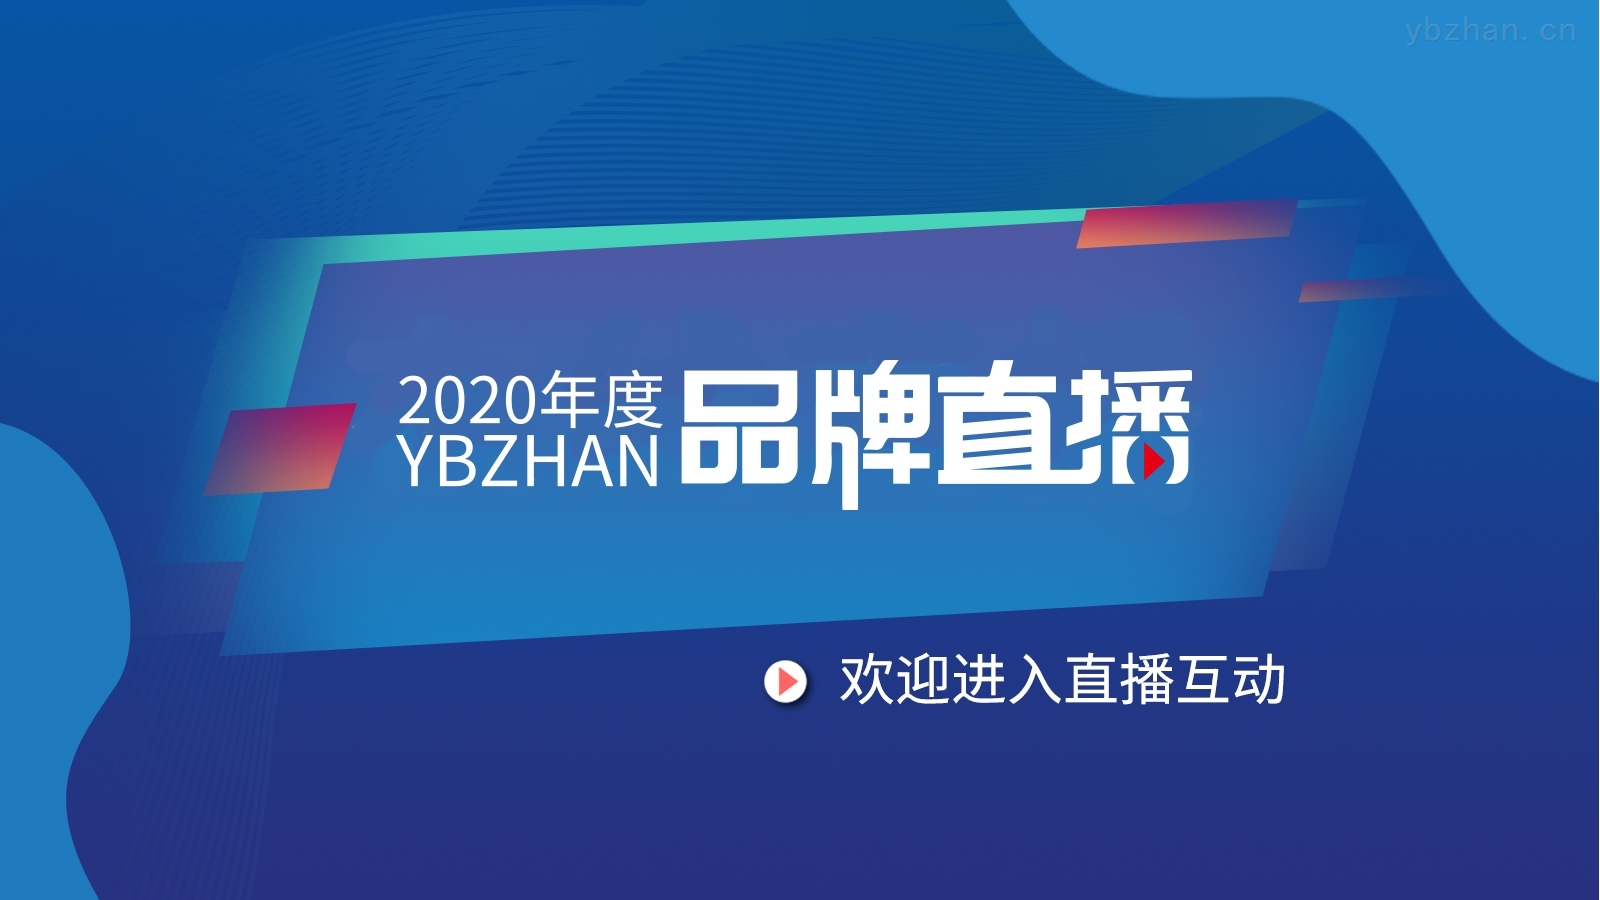 華恒儀表2020年度YBZHAN品牌直播